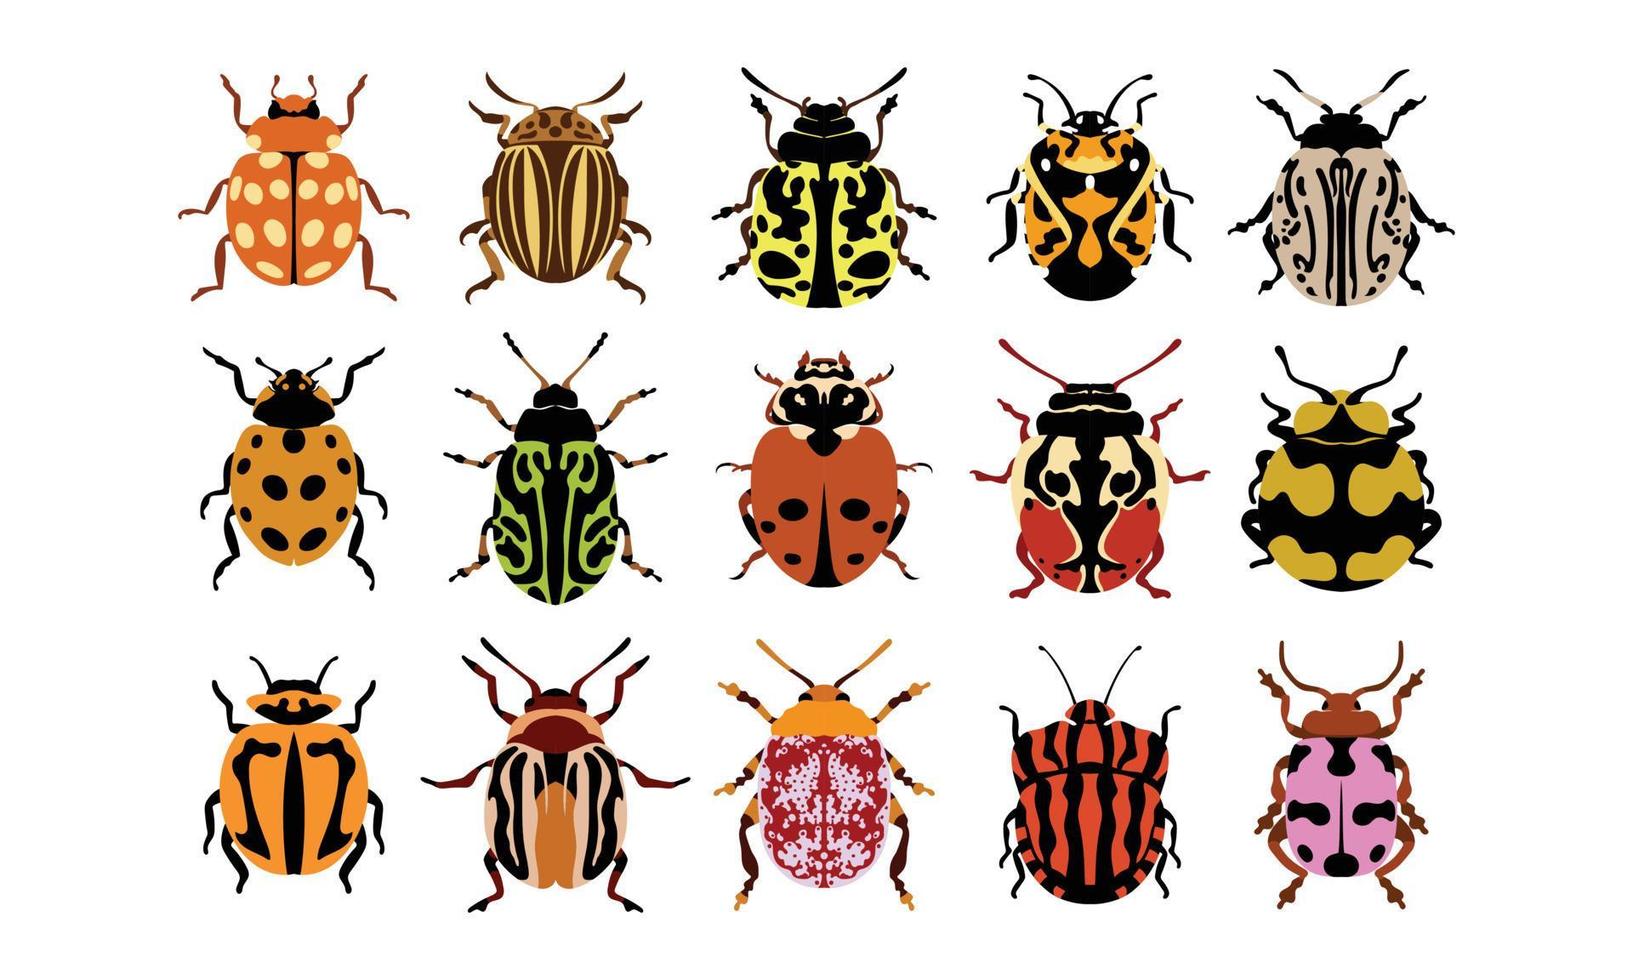 Sammlungssatz flache Vektorillustration von Wanzen. insekten und gartenkonzept animiert in buntem thema. Cartoon-Illustration der Natur auf weißem Hintergrund. vektor